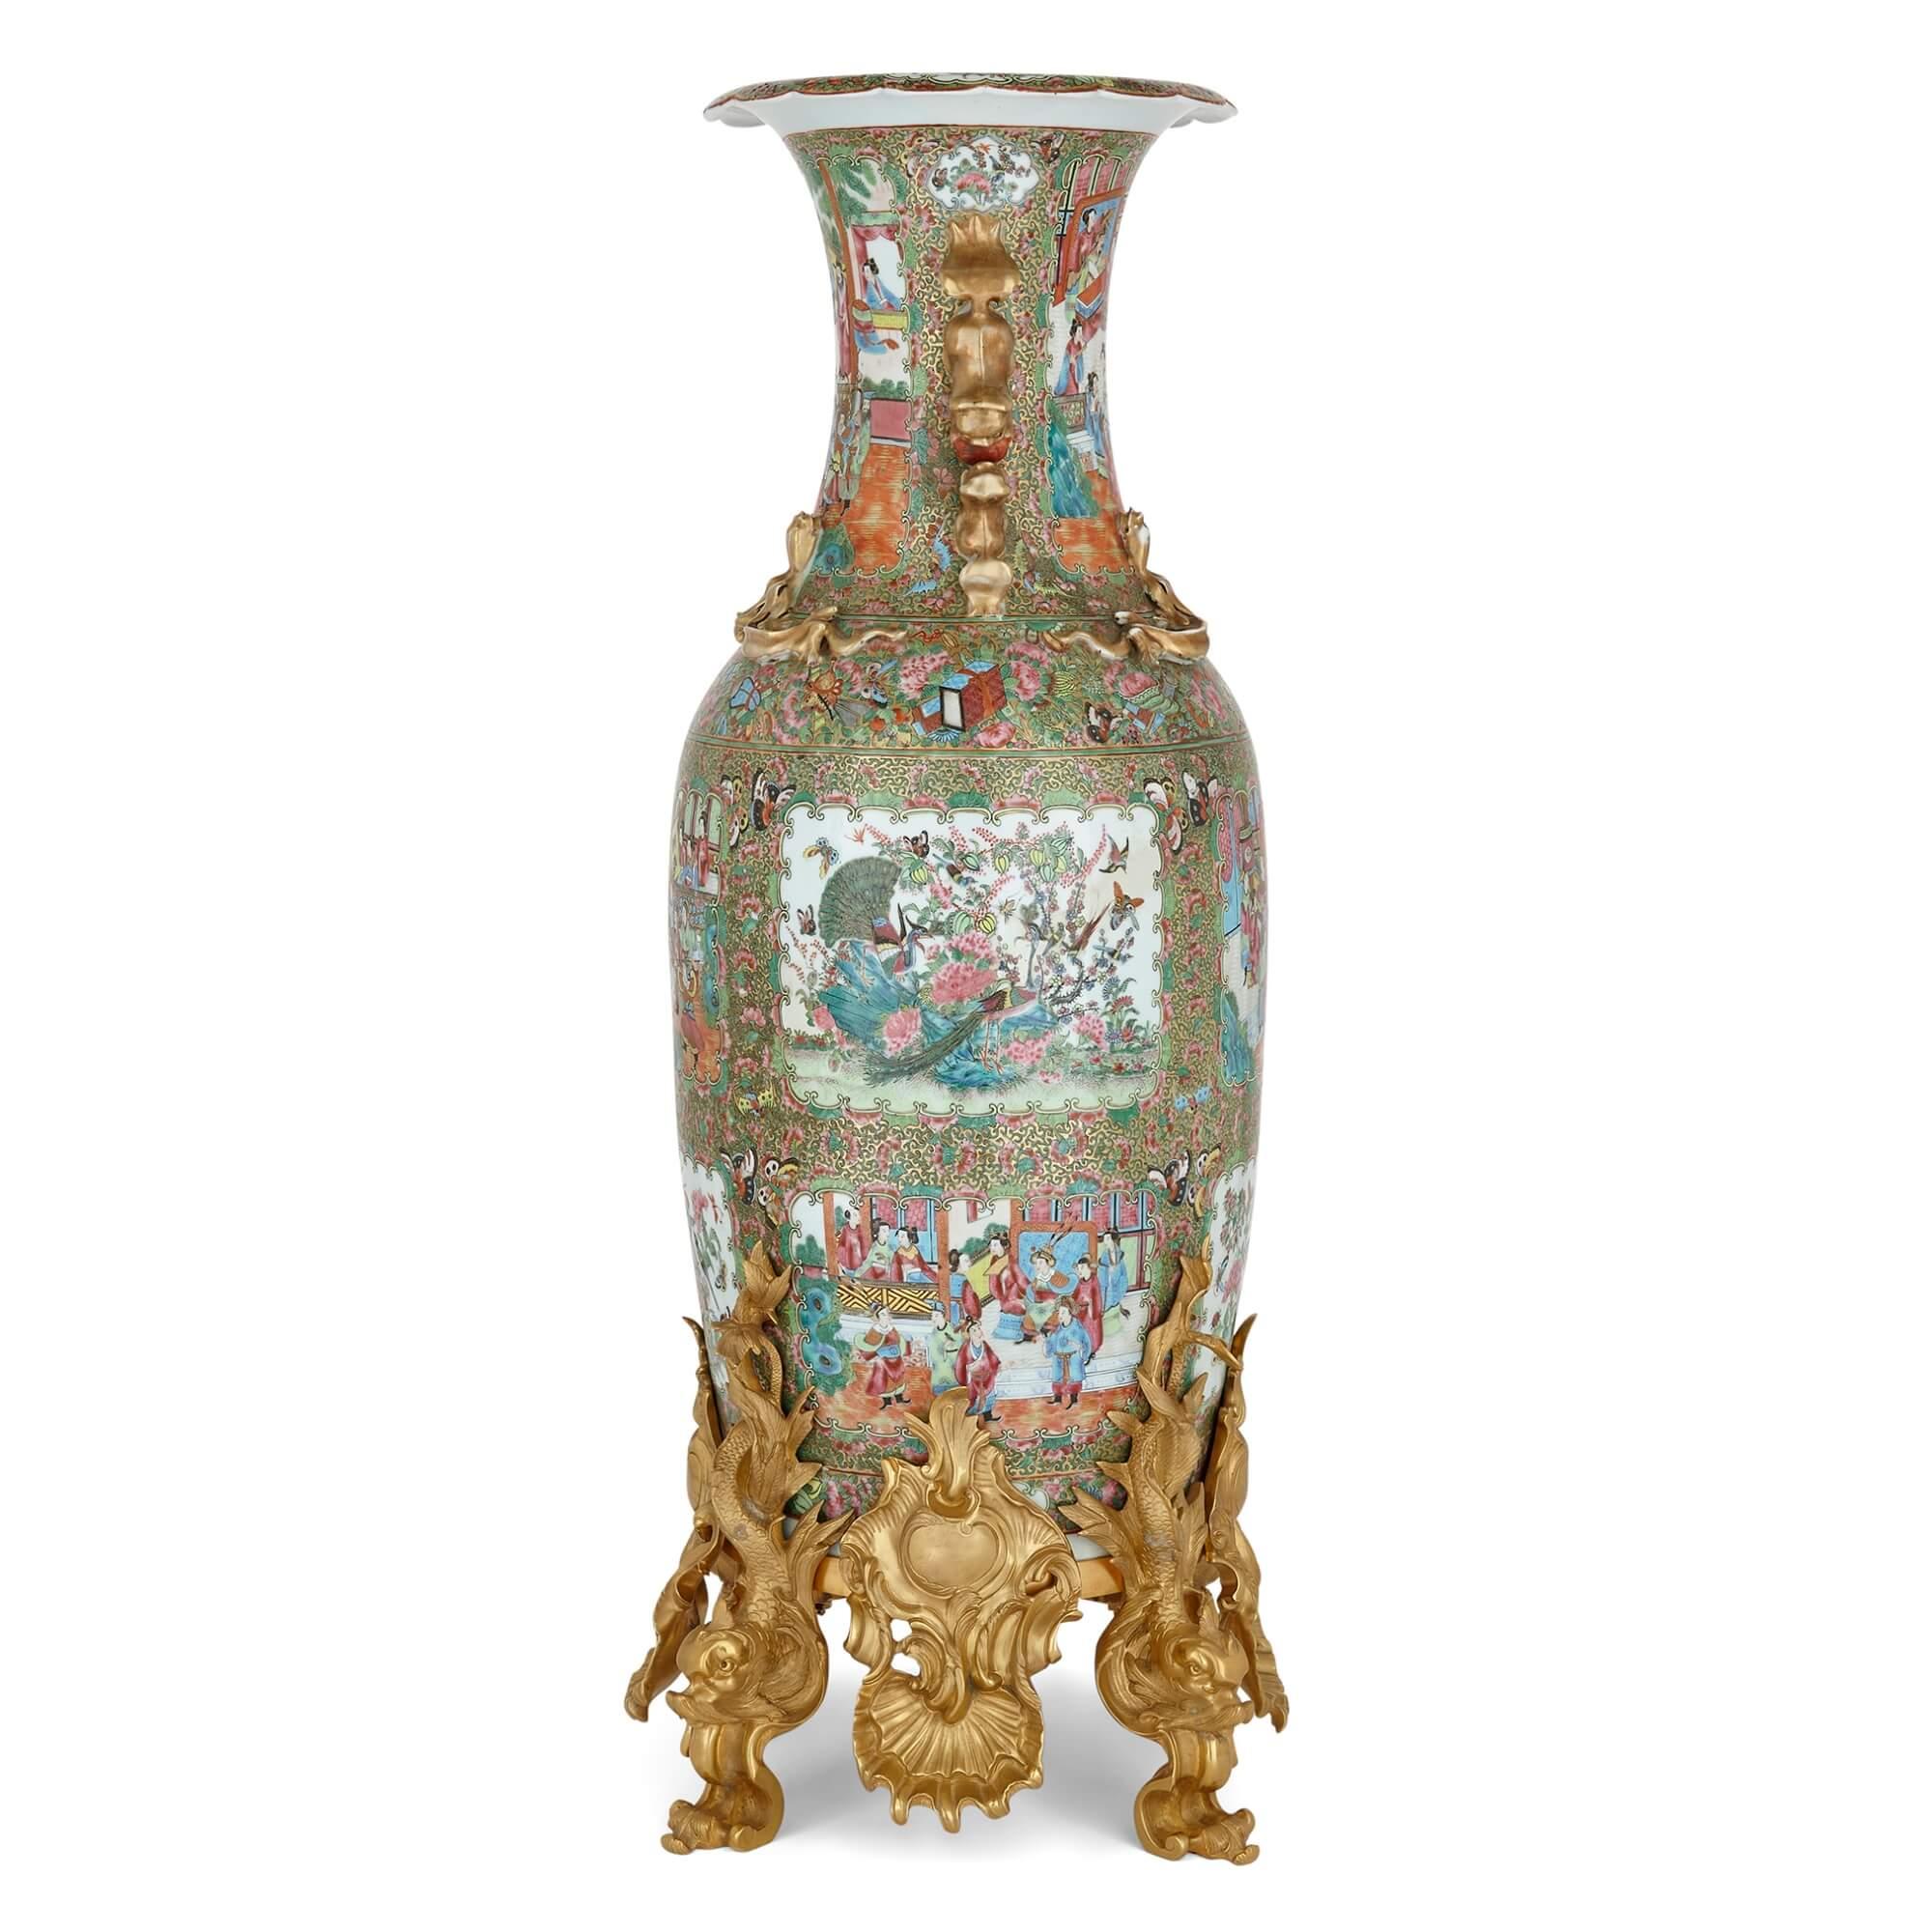 Grand vase en porcelaine montée en bronze doré de la famille verte de Canton
Chinois, 19e siècle
Hauteur 107 cm, diamètre 37 cm

Ce magnifique vase chinois de Calle est décoré à la manière dite de la famille verte, dans laquelle les tons primaires